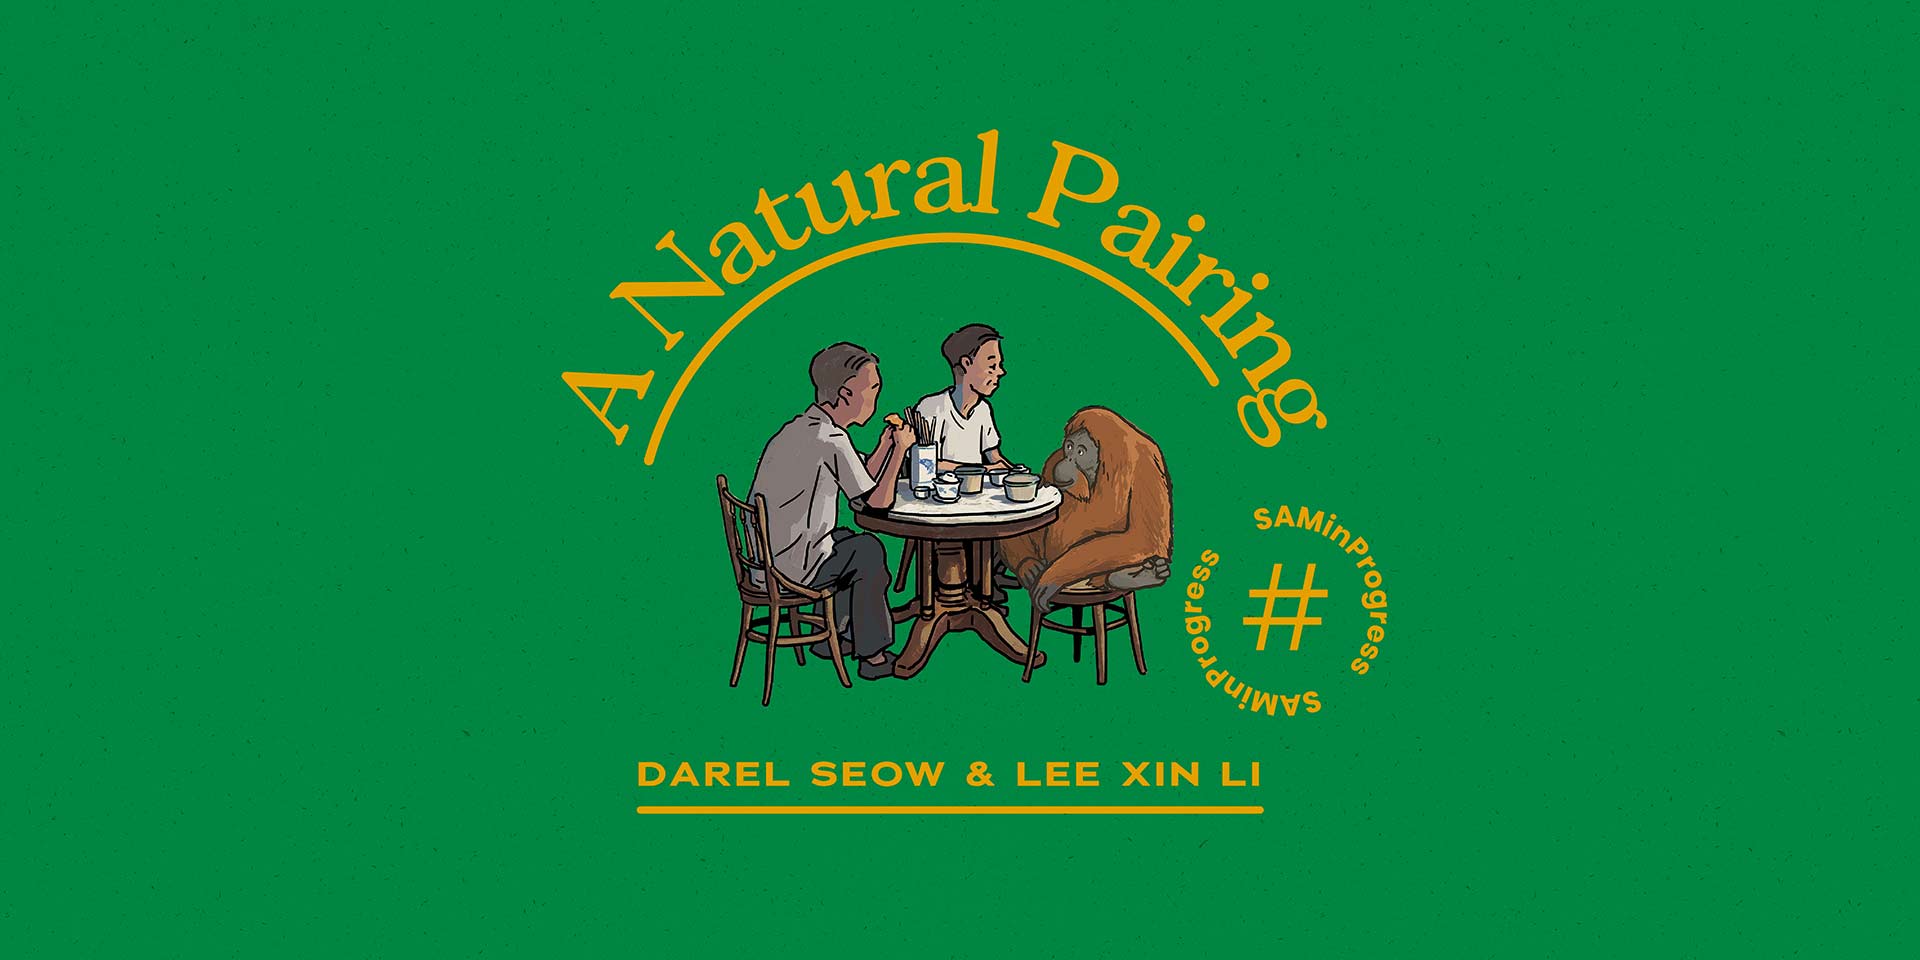 Darel Seow and Lee Xin Li: A Natural Pairing